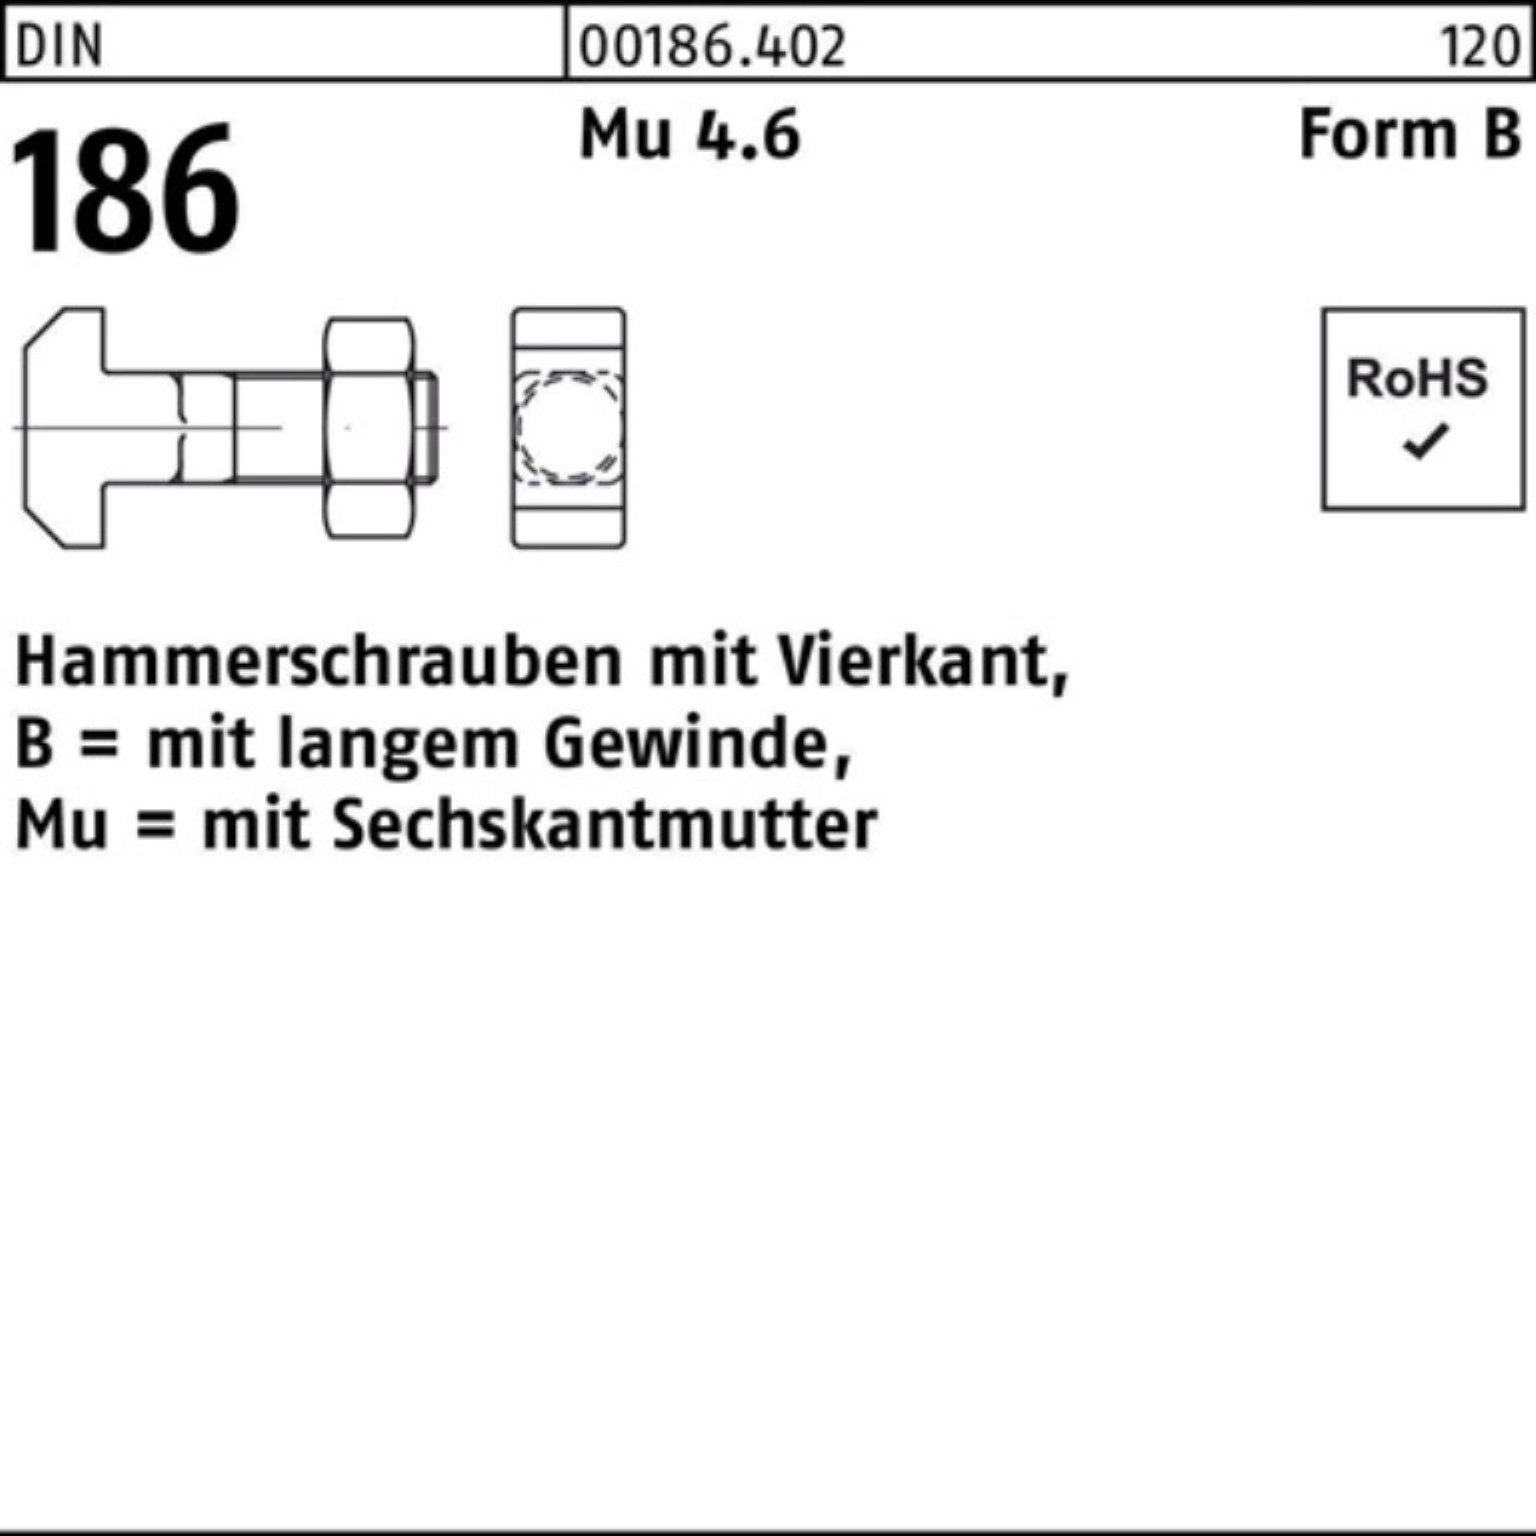 FormB Hammerschraube 186 BM Reyher M Pack 8x DIN 100er 80 Vierkant 6-ktmutter Schraube